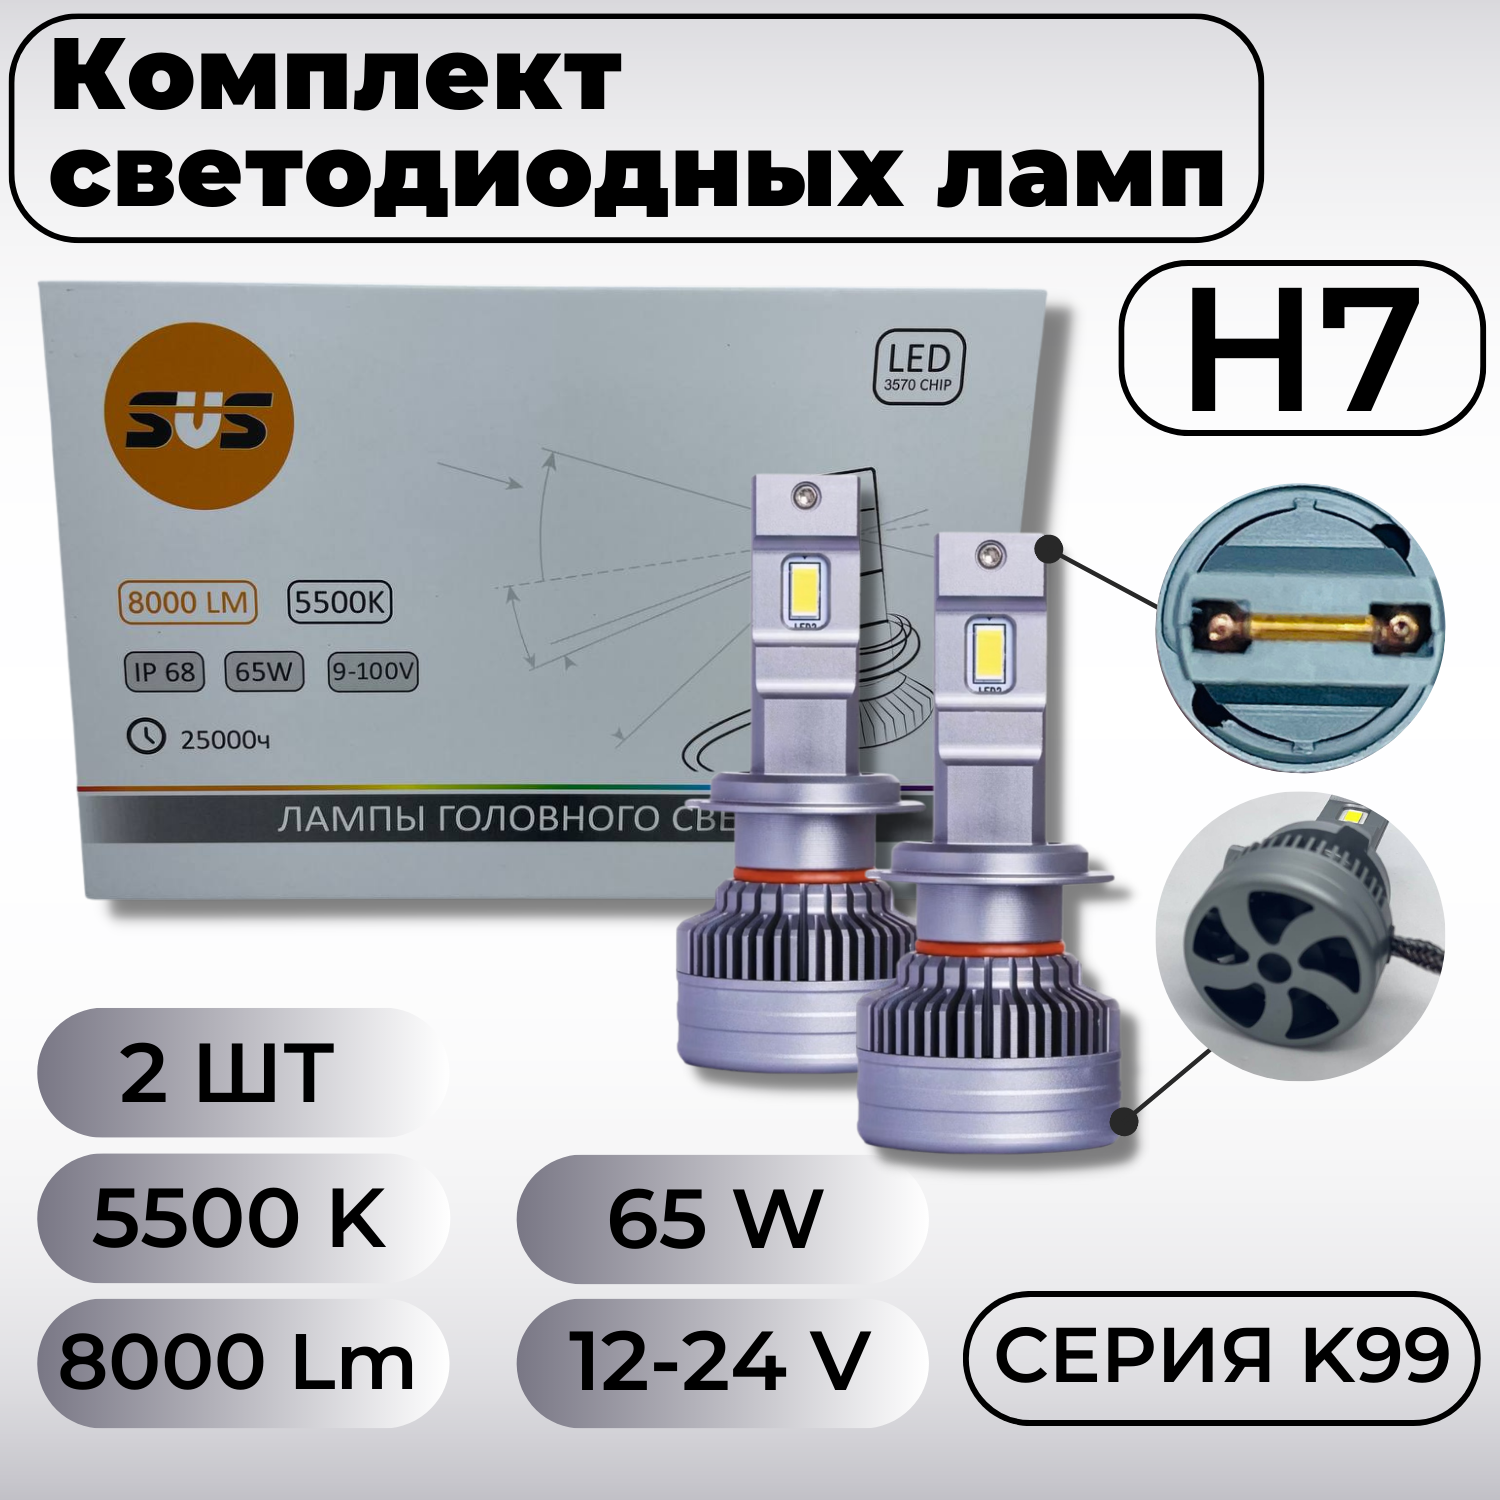 Комплект светодиодных ламп H7 "SVS", K99, 9-32V, 5500K